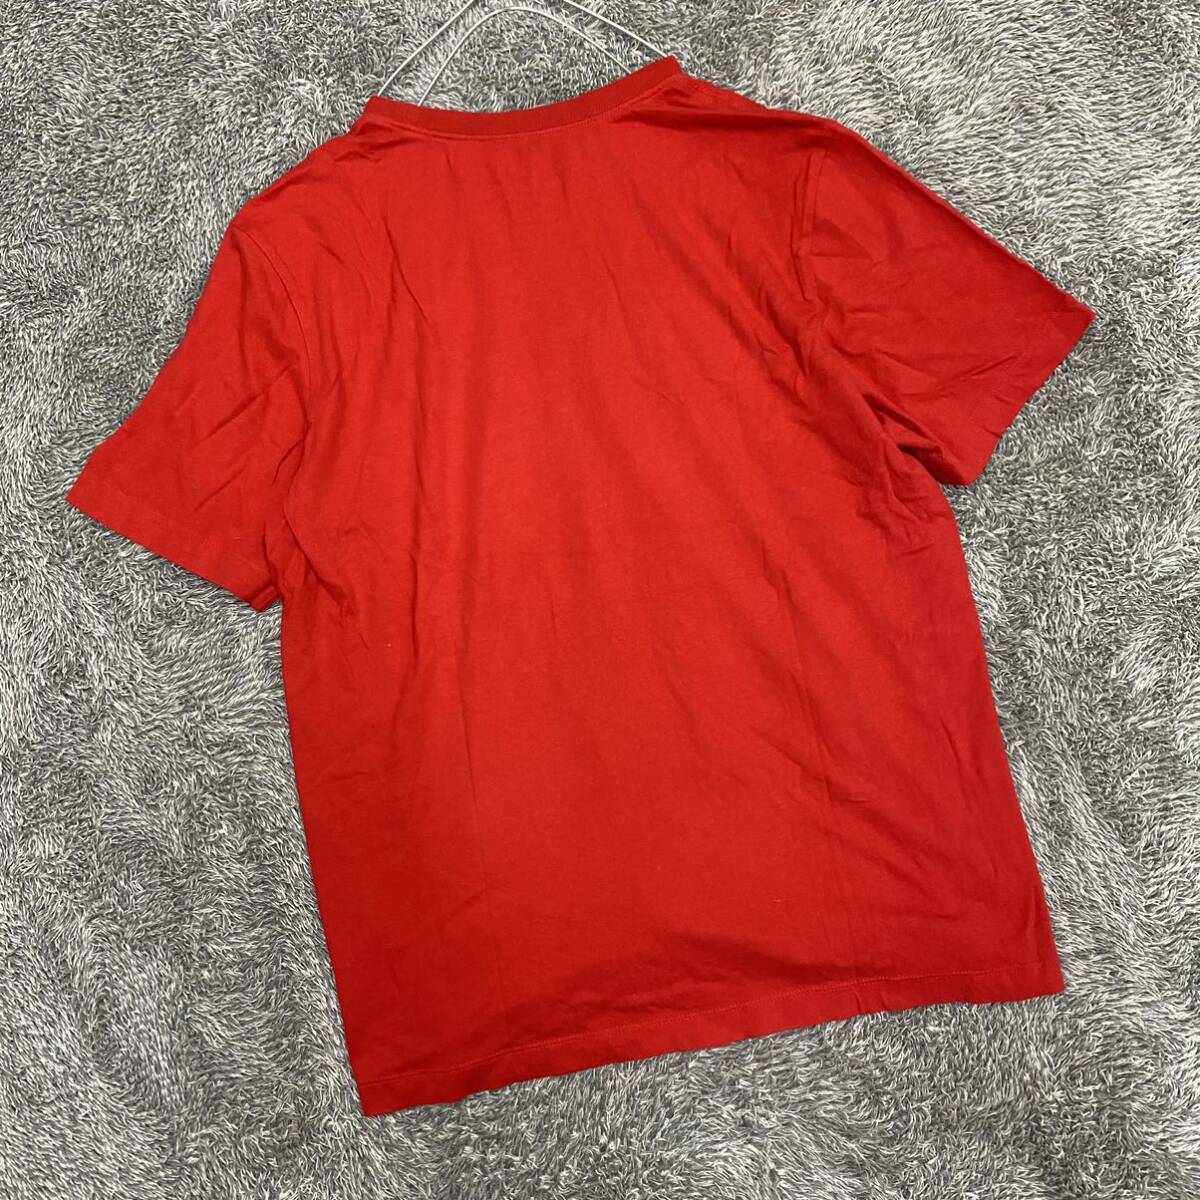 NIKE ナイキ Tシャツ 半袖Tシャツ サイズXL レッド 赤 メンズ トップス 最落なし （U18）の画像2